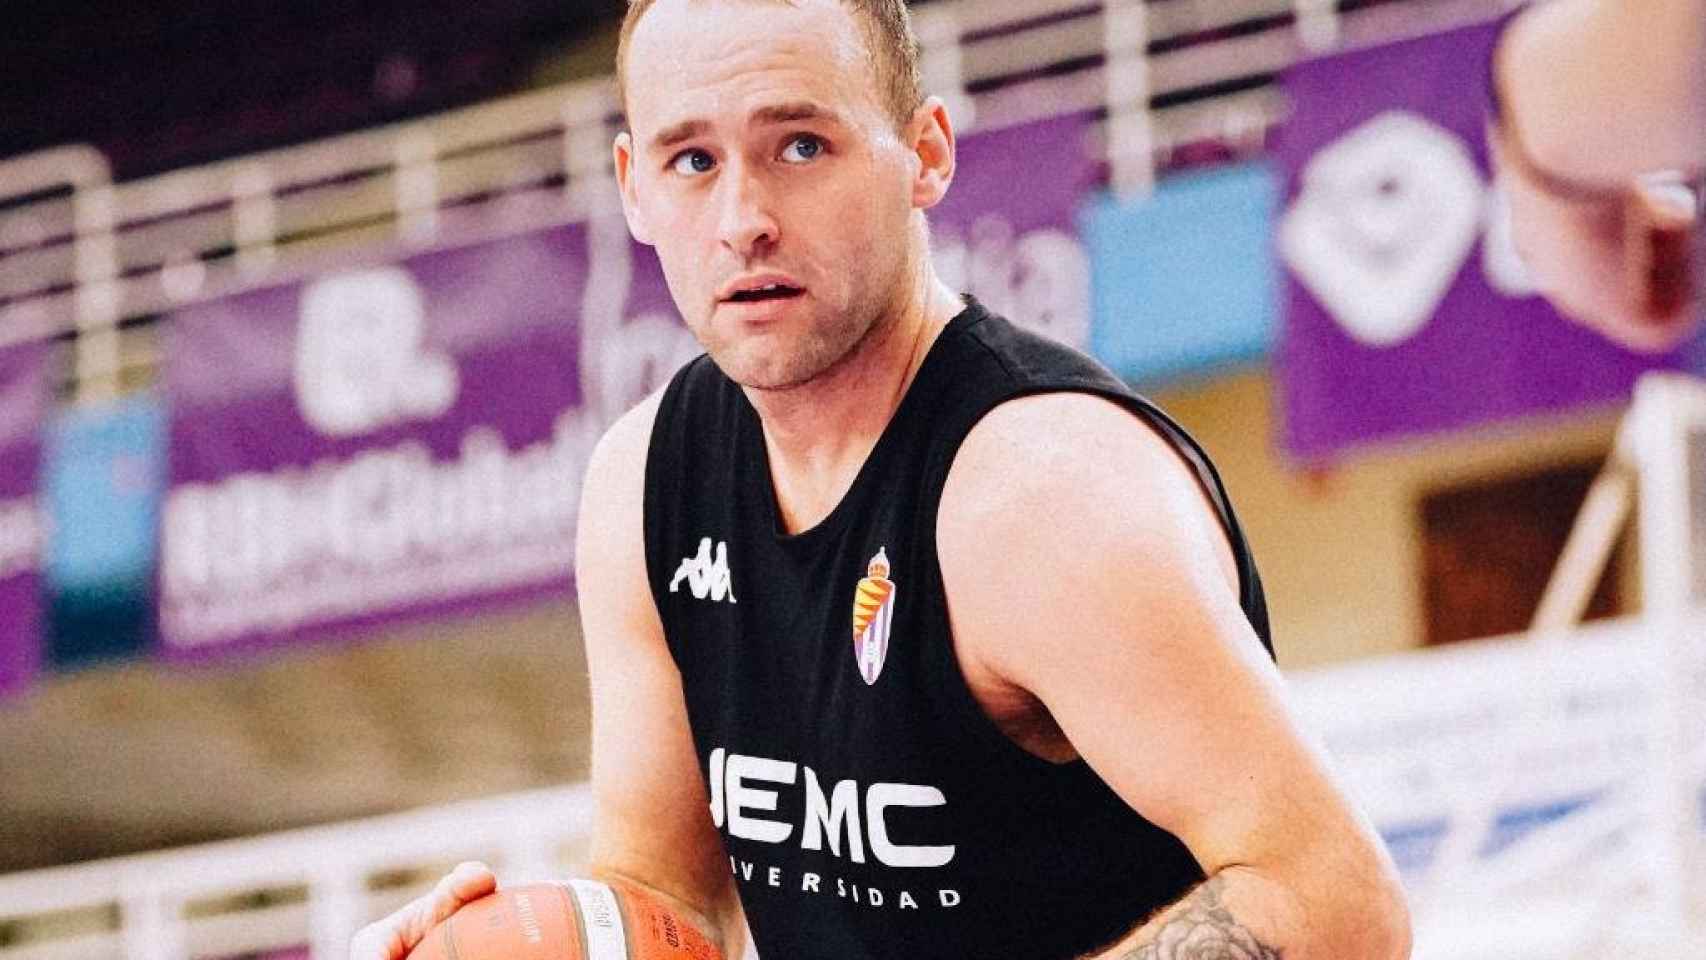 Devin Schmidt, jugador del UEMC Real Valladolid Baloncesto